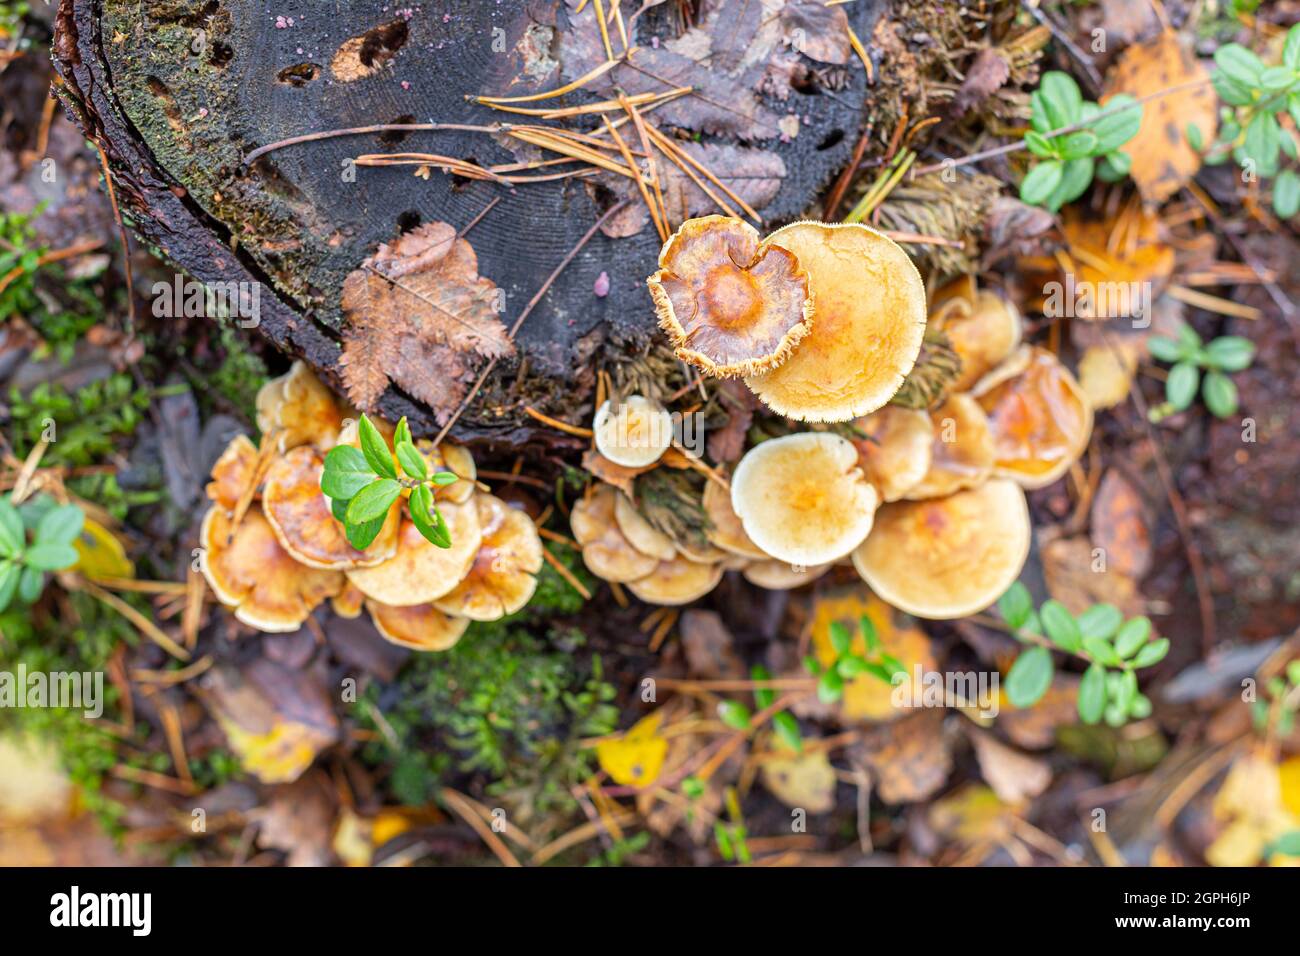 Champignons, aiguilles de conifères et feuilles sur une souche, dans la forêt humide d'automne, vue de dessus. Alternative végétalienne à la viande, riche en protéines. Recherche de nourriture en extérieur Banque D'Images